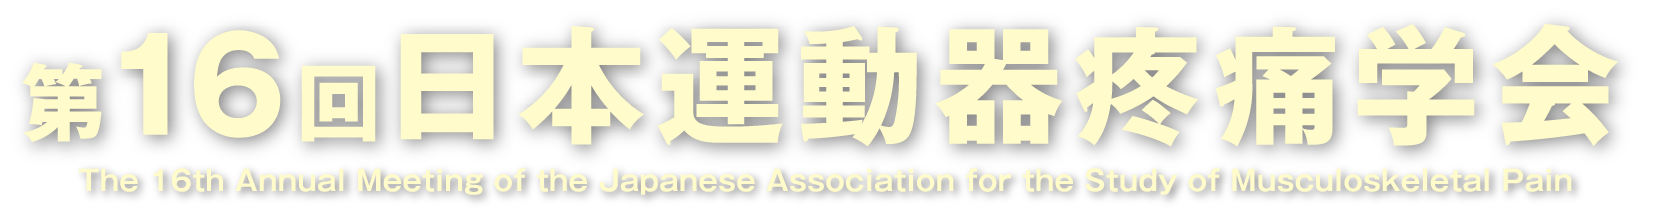 第16回日本運動器疼痛学会 The 16th Annual Meeting of the Japanese Association for the Study of Musculoskeletal Pain